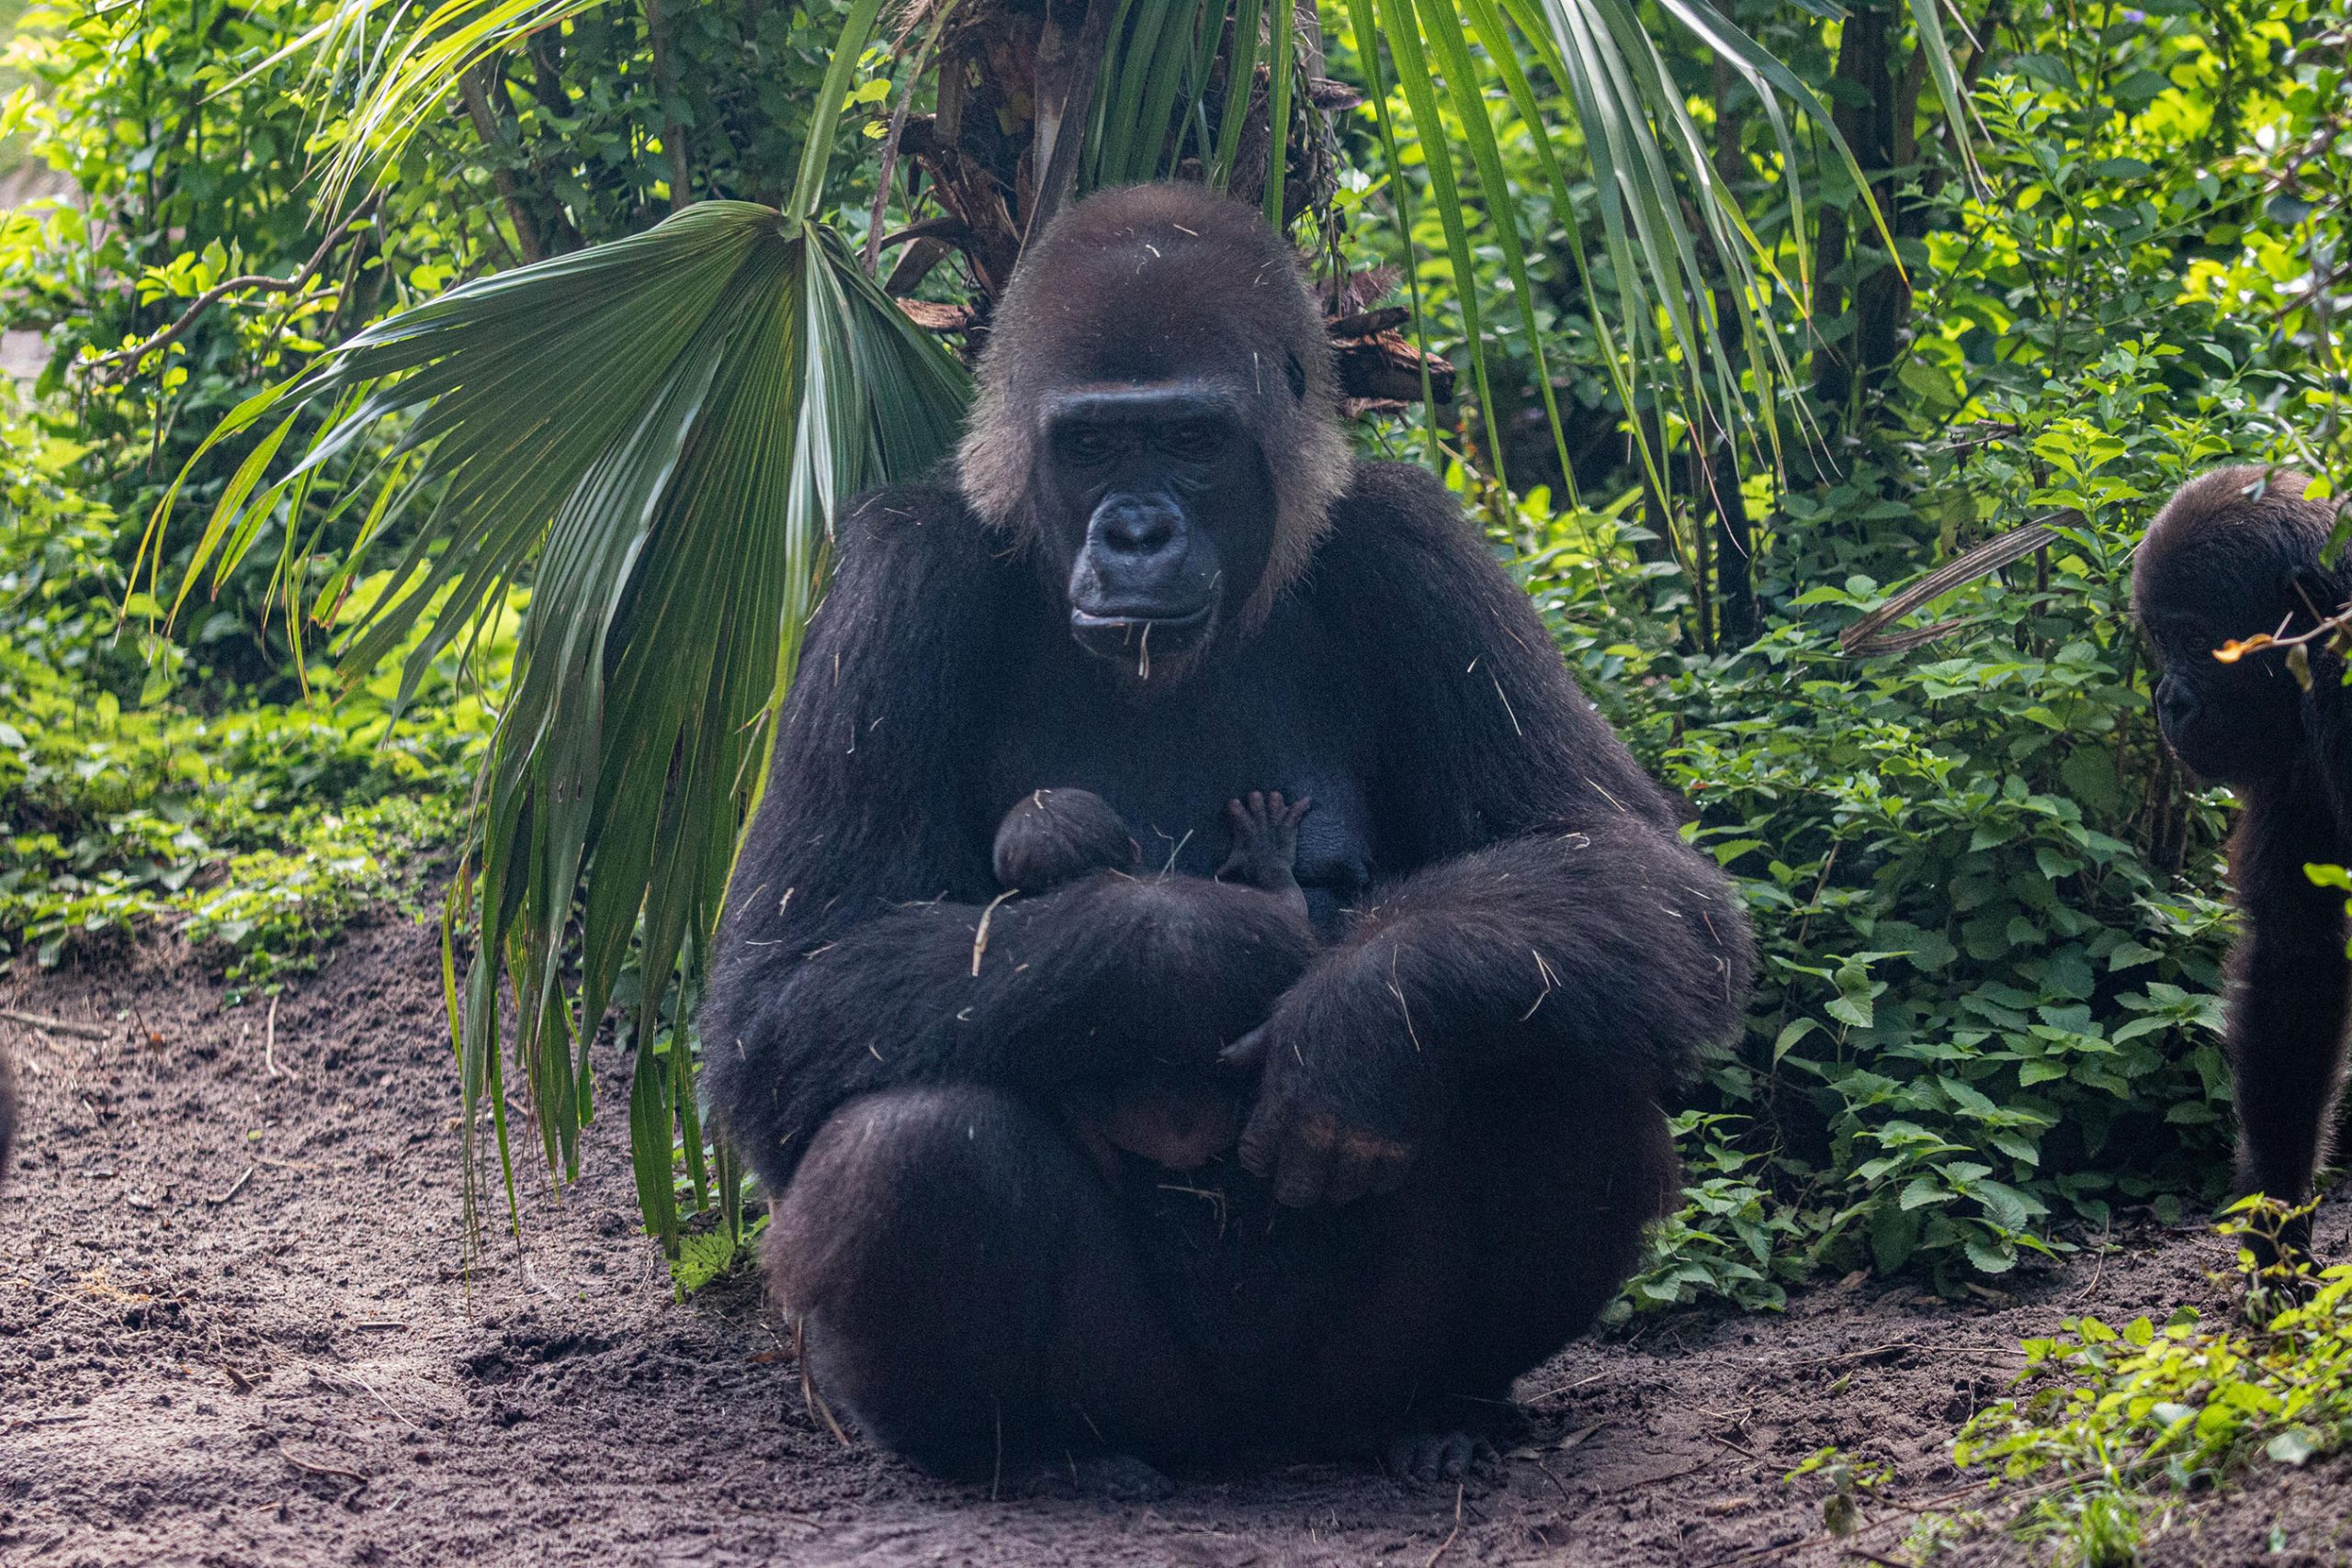 Gorilla Falls Animal Kingdom 